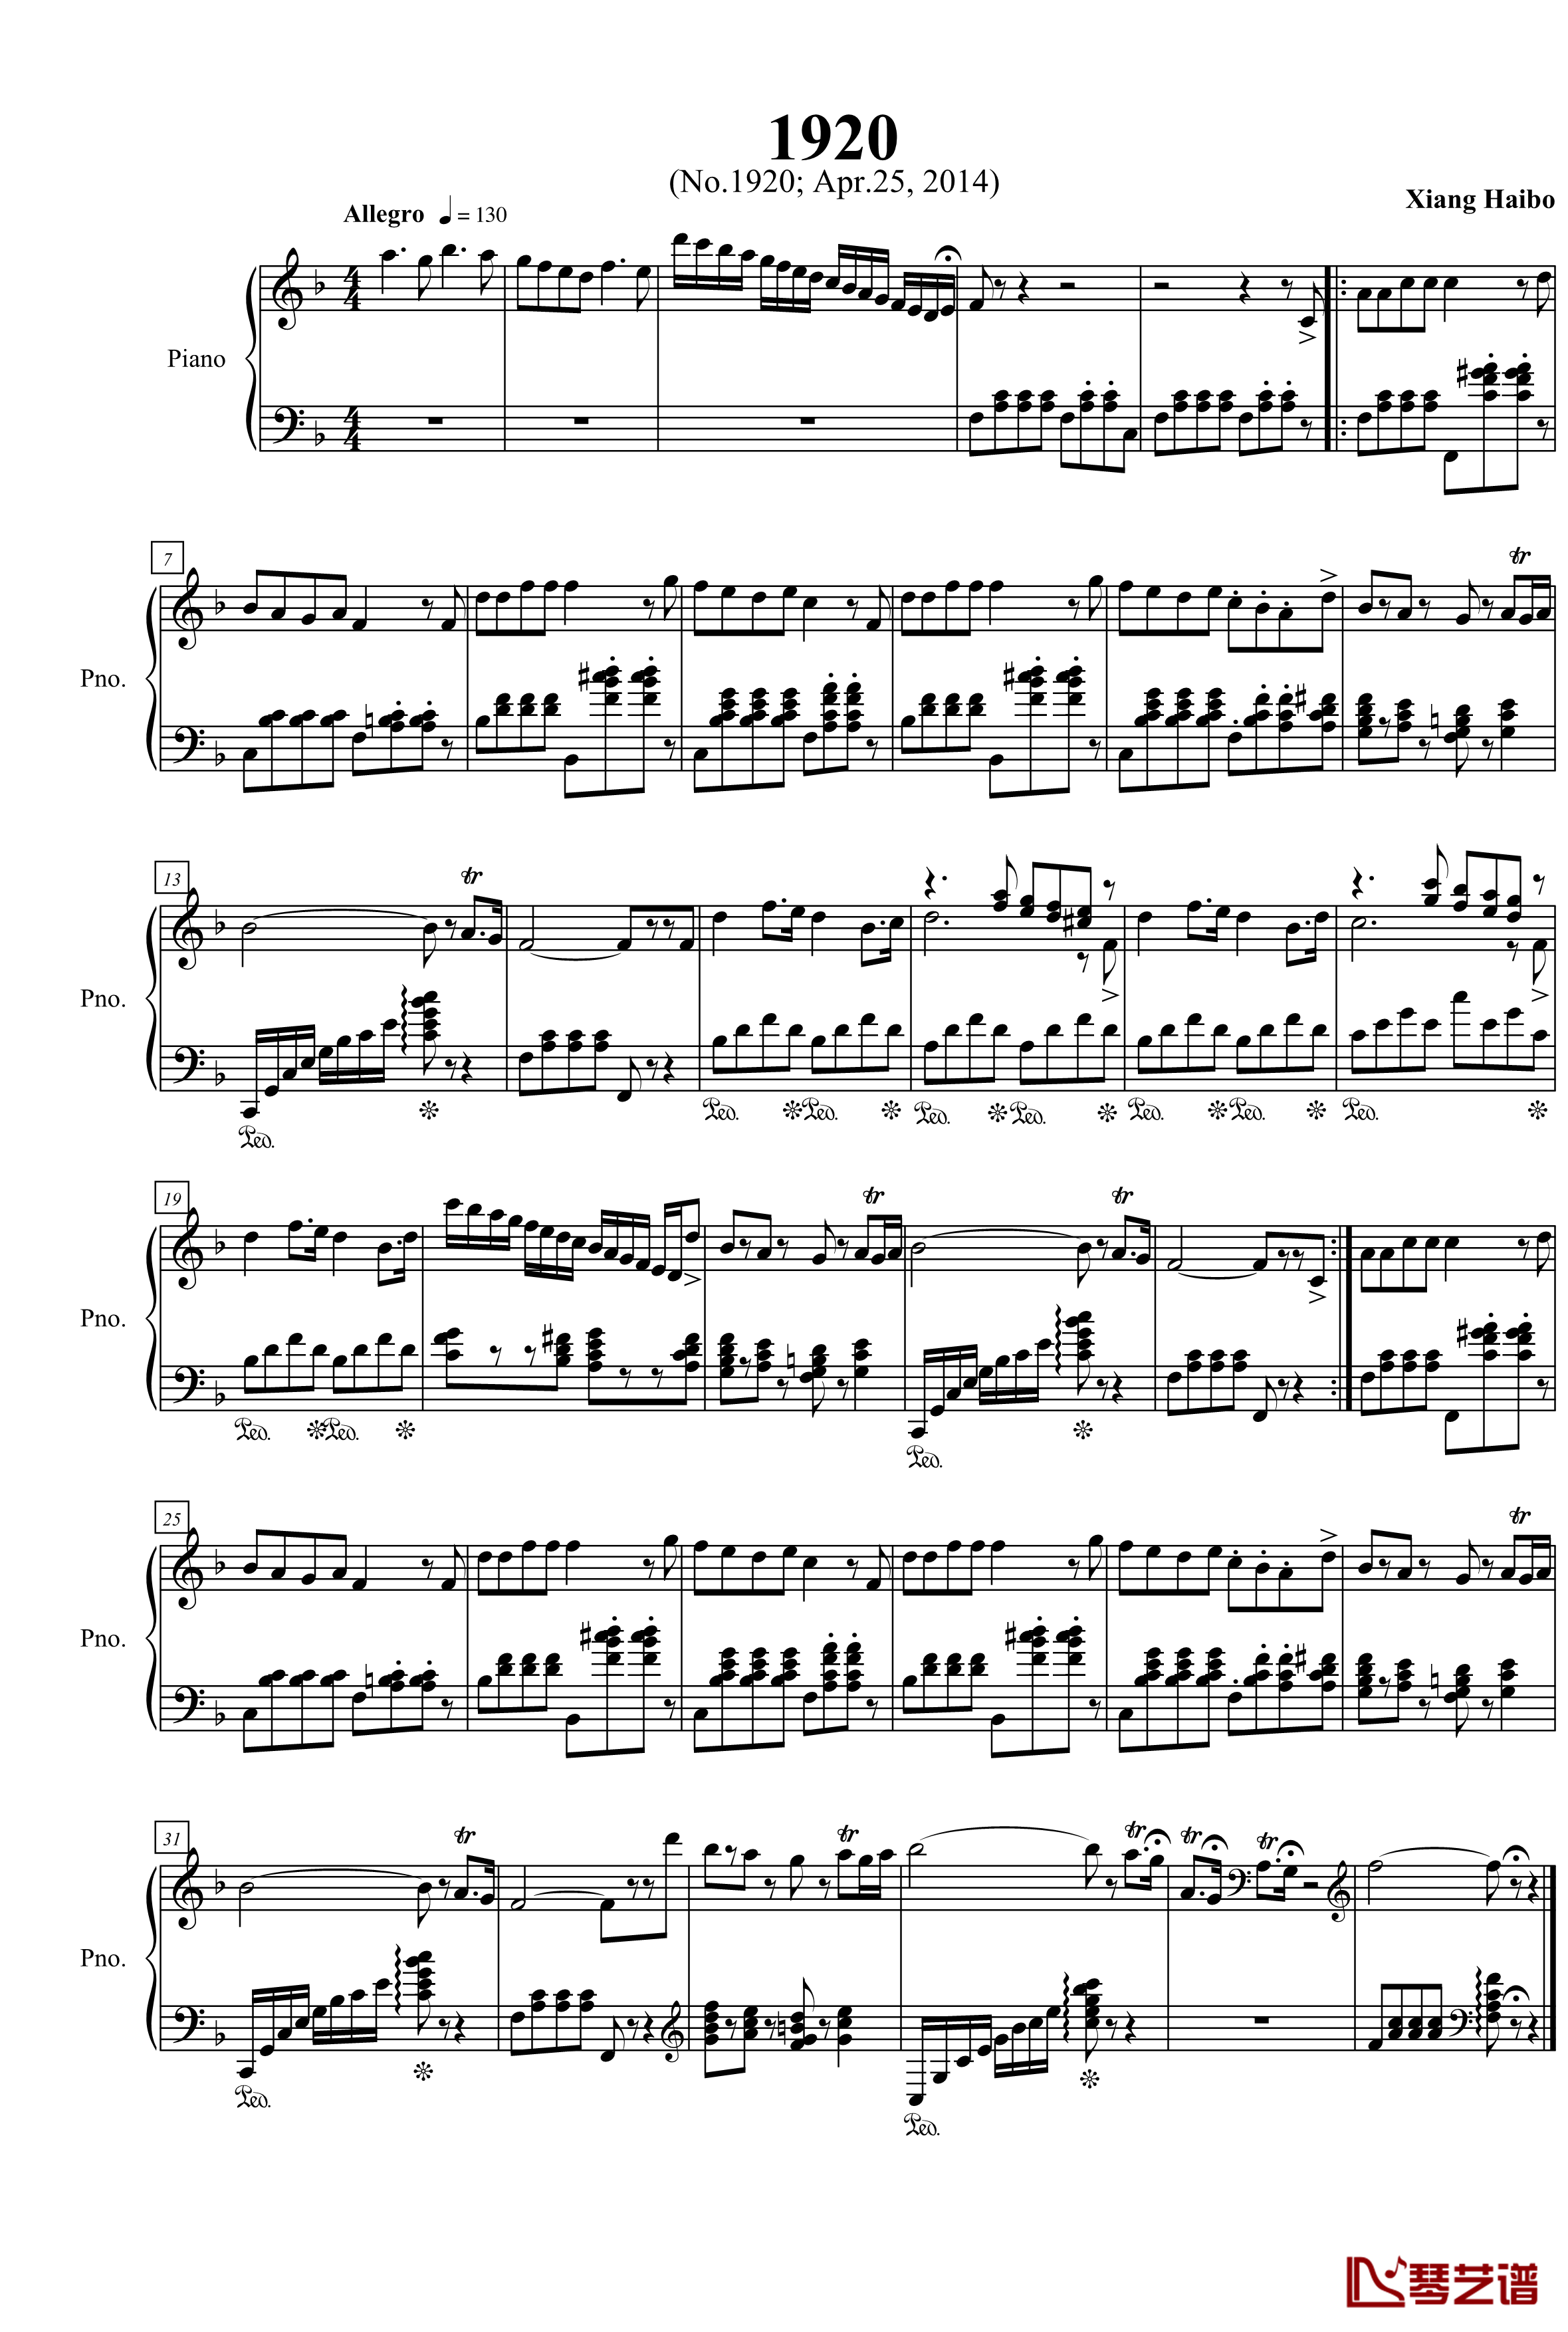 一页大键琴曲钢琴谱-项海波1